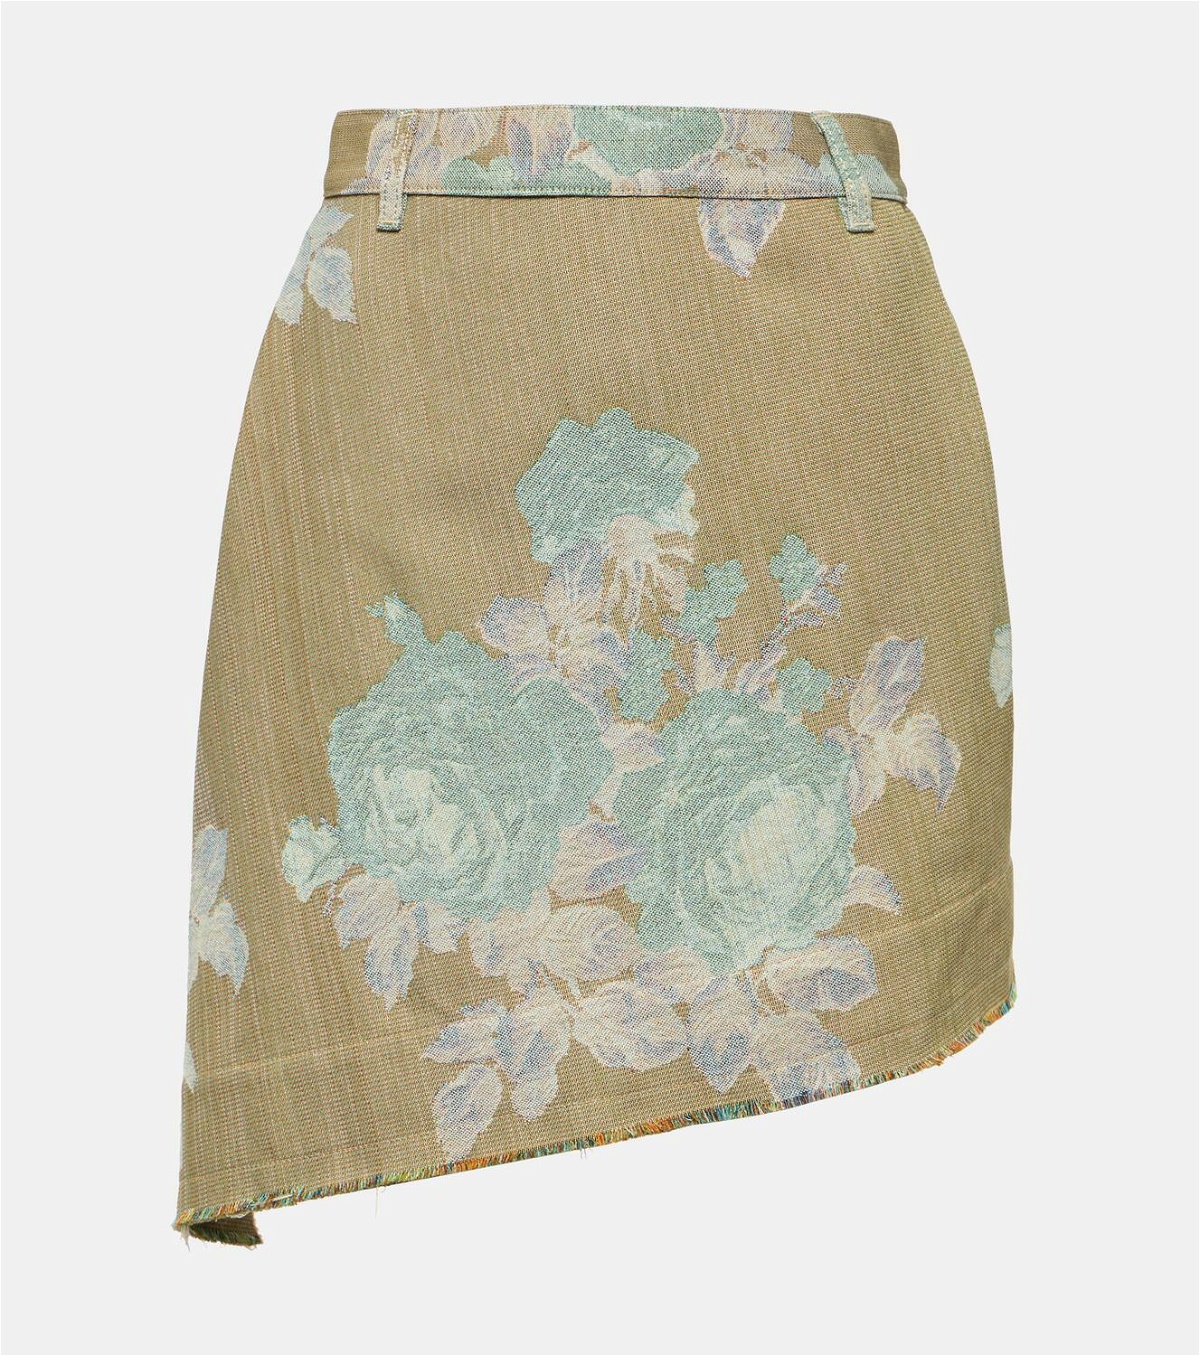 Vivienne Westwood Sailor floral asymmetric denim miniskirt